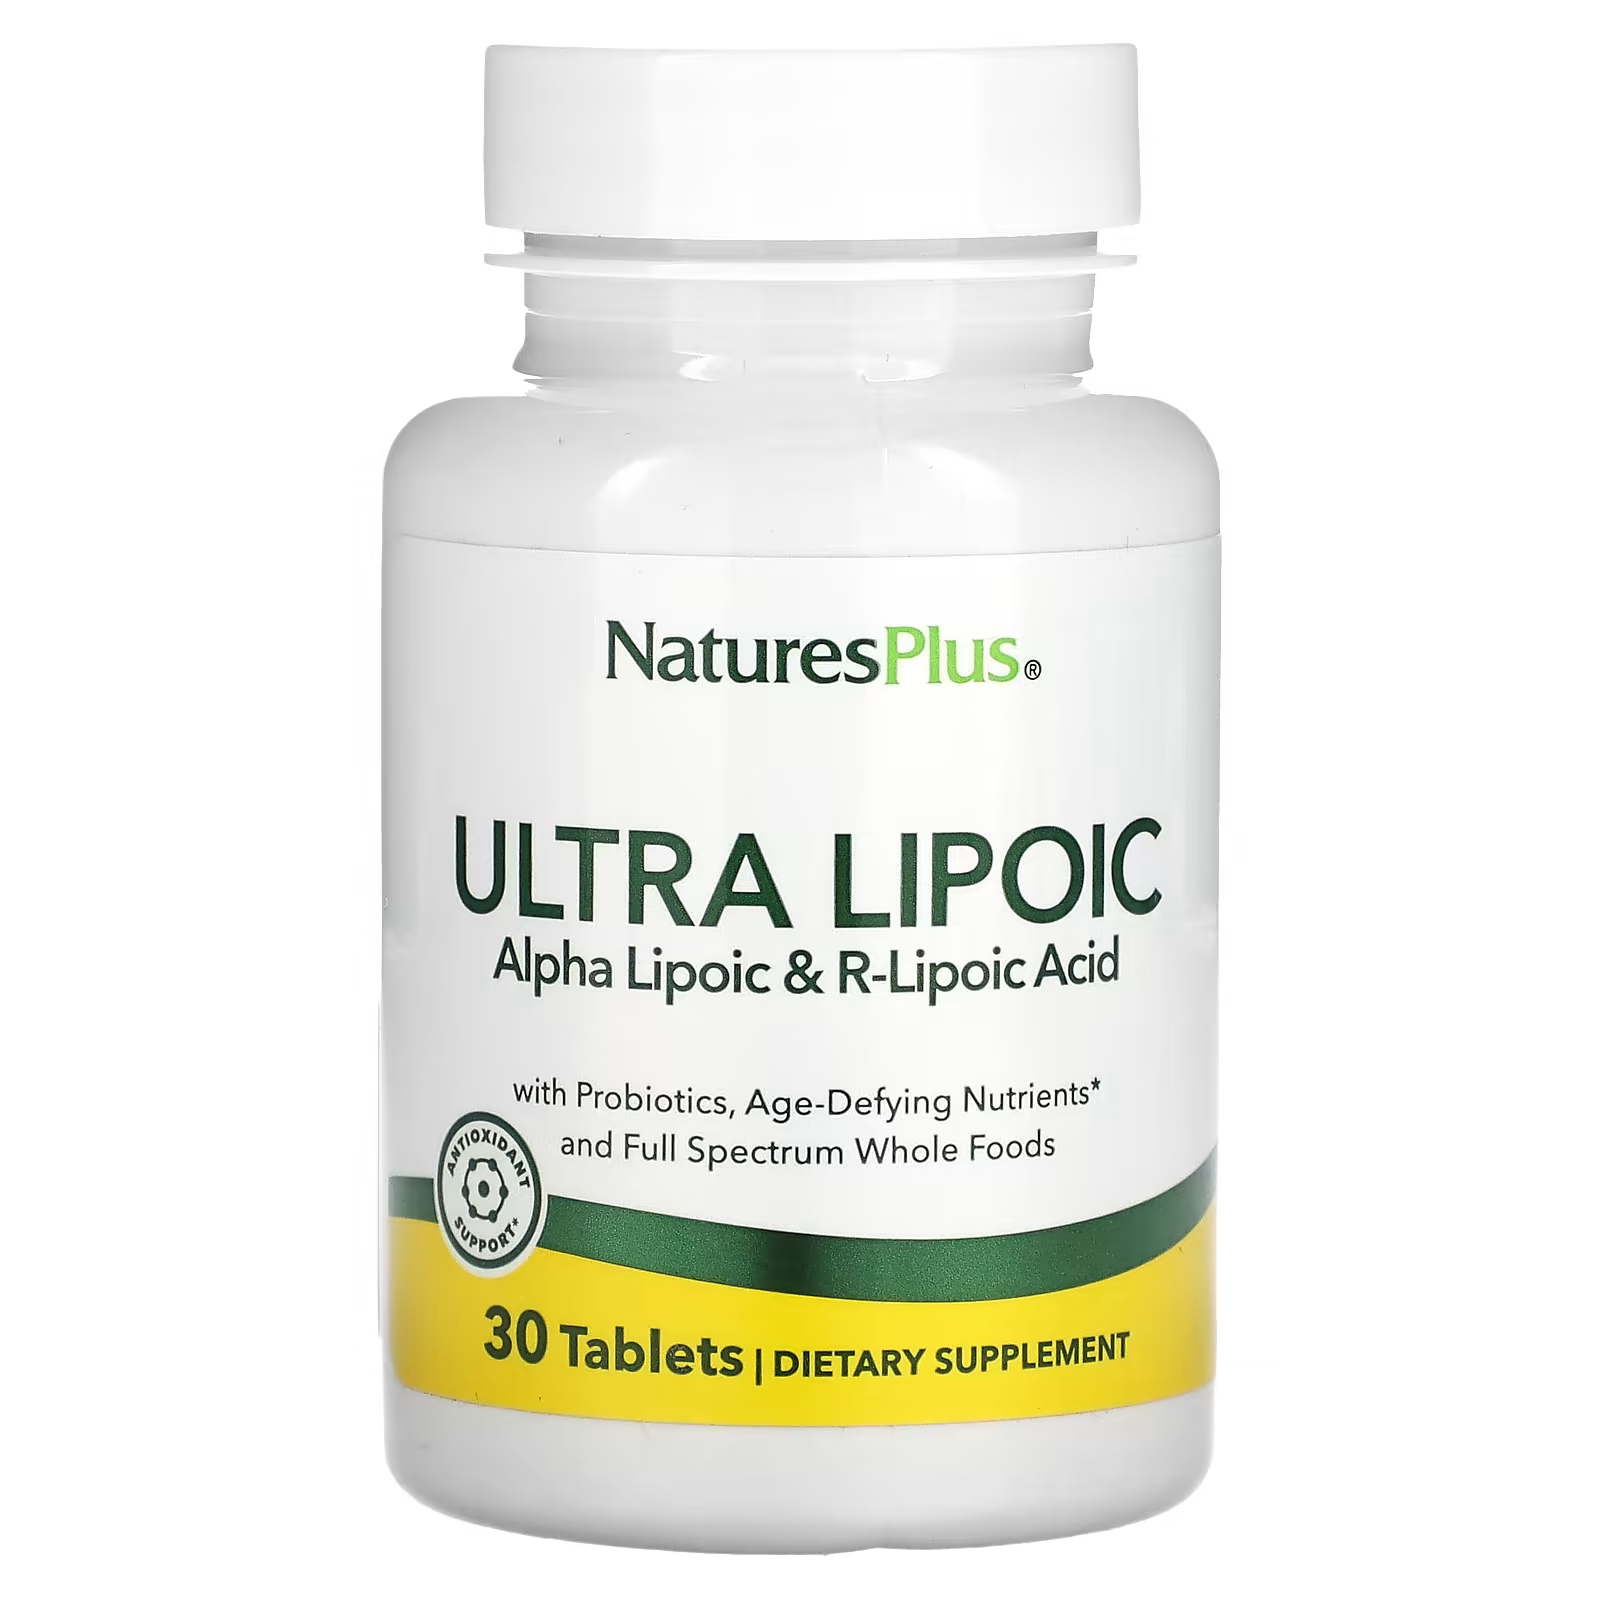 Пищевая добавка NaturesPlus Ultra Lipoic, 30 таблеток пищевая добавка ultra garlite naturesplus пролонгированного действия 90 таблеток